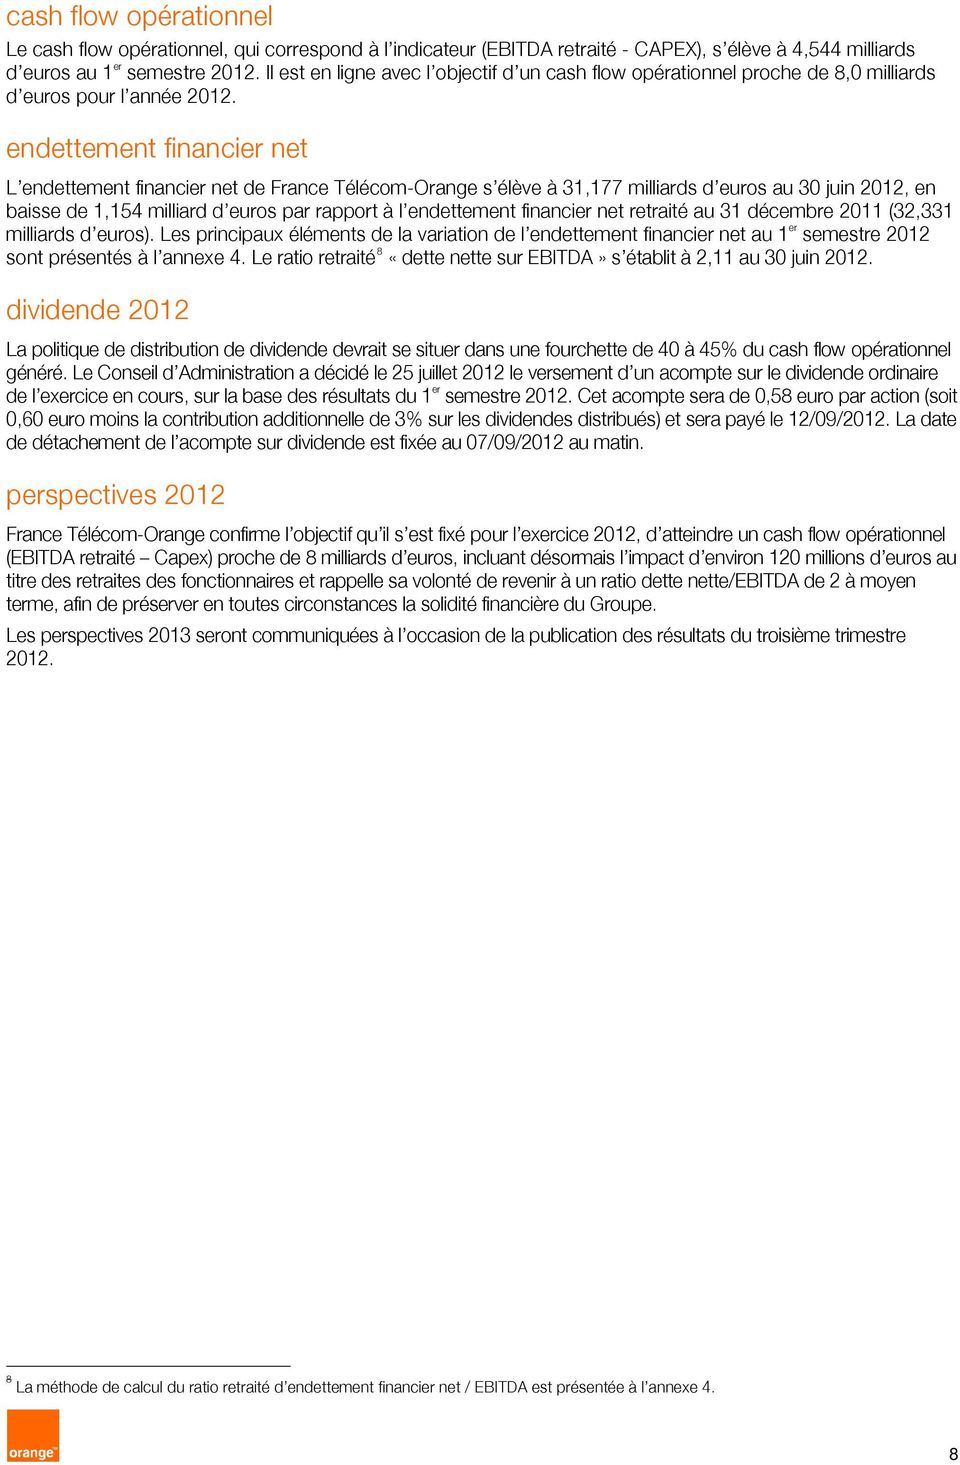 endettement financier net L endettement financier net de France Télécom-Orange s élève à 31,177 milliards d euros au 30 juin 2012, en baisse de 1,154 milliard d euros par rapport à l endettement